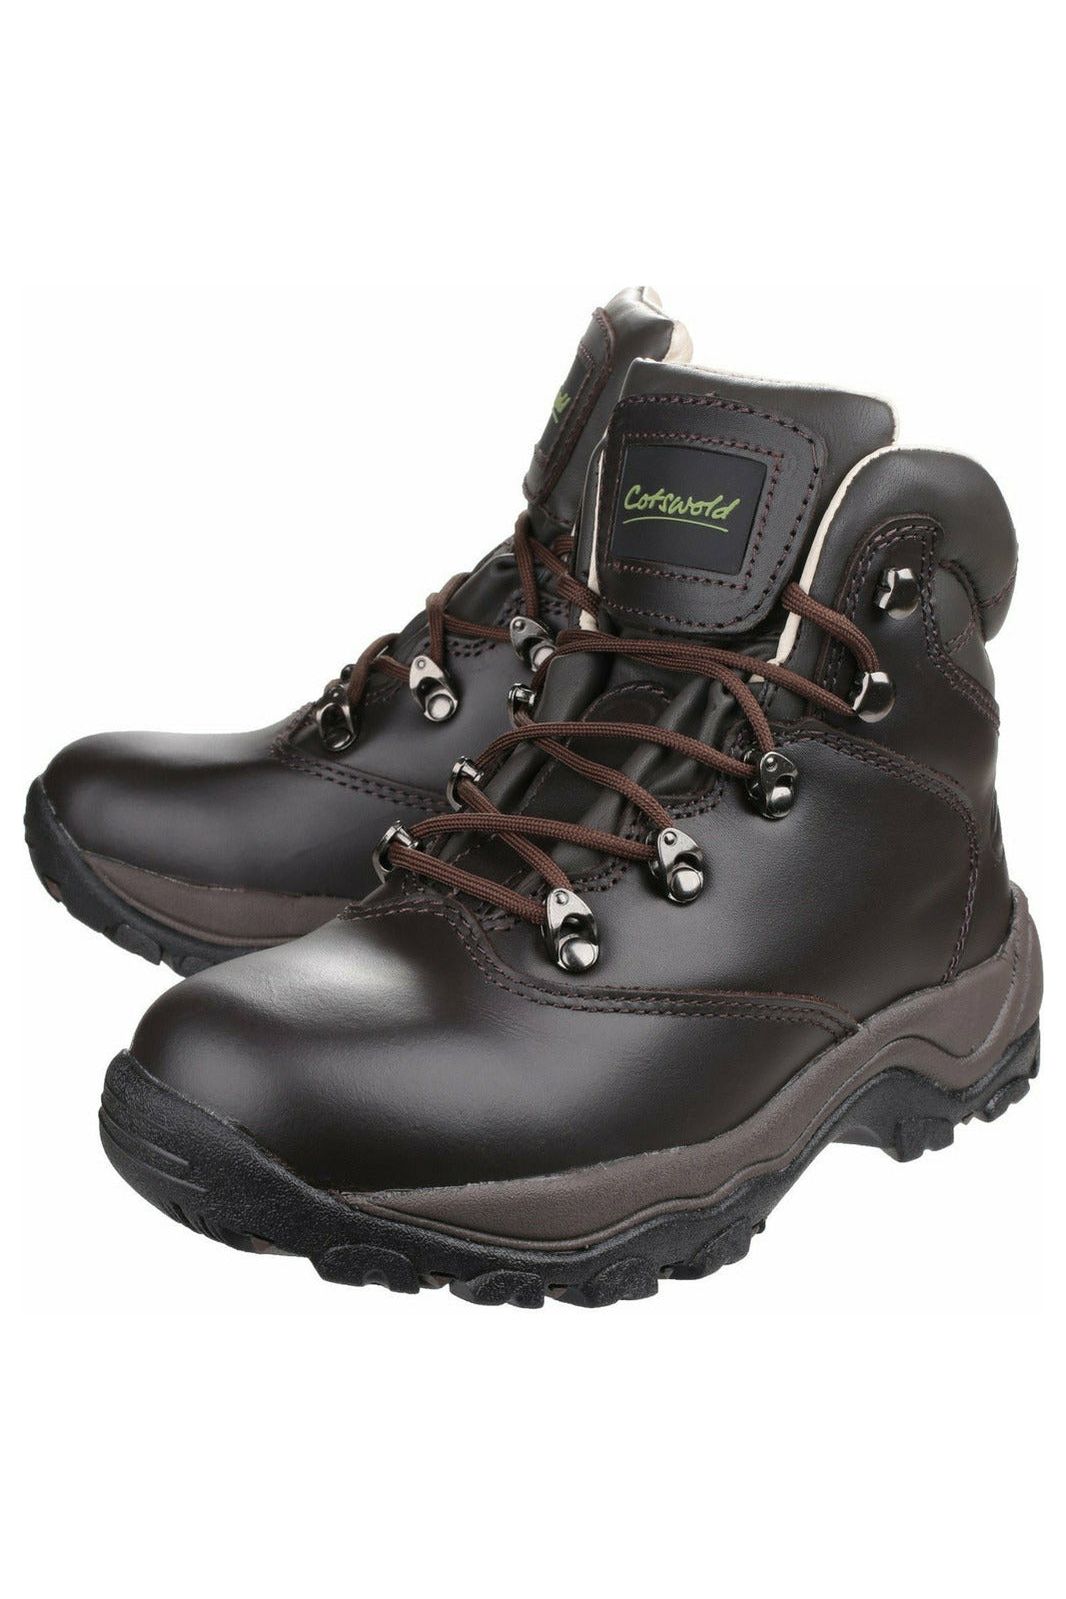 Cotswold - Wodoodporne damskie buty trekkingowe Winstone